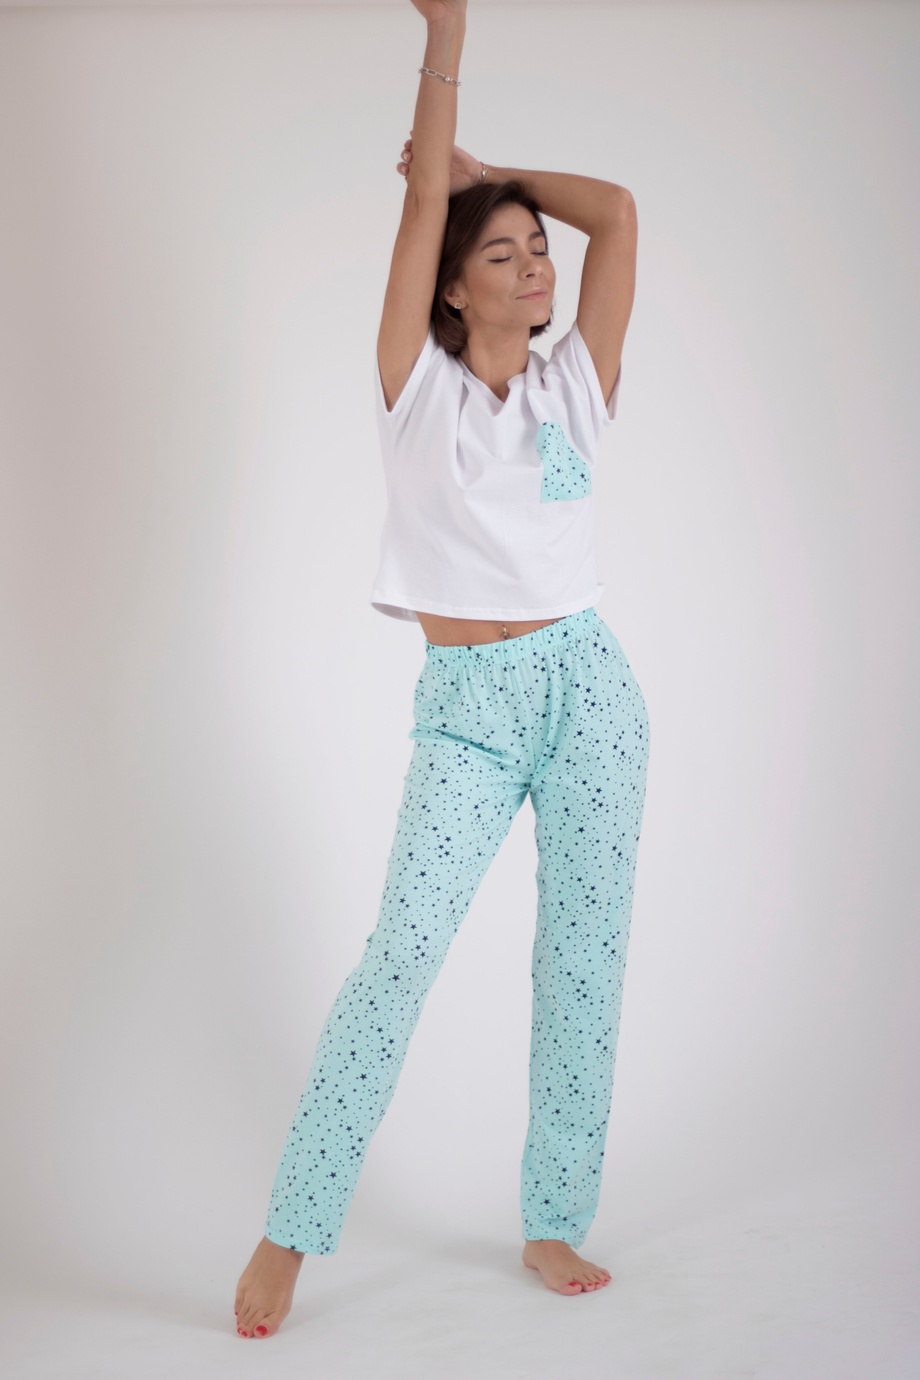 Пижама Трио, Звездочки на мятном, xS/S, Со штанами, штаны и футболка